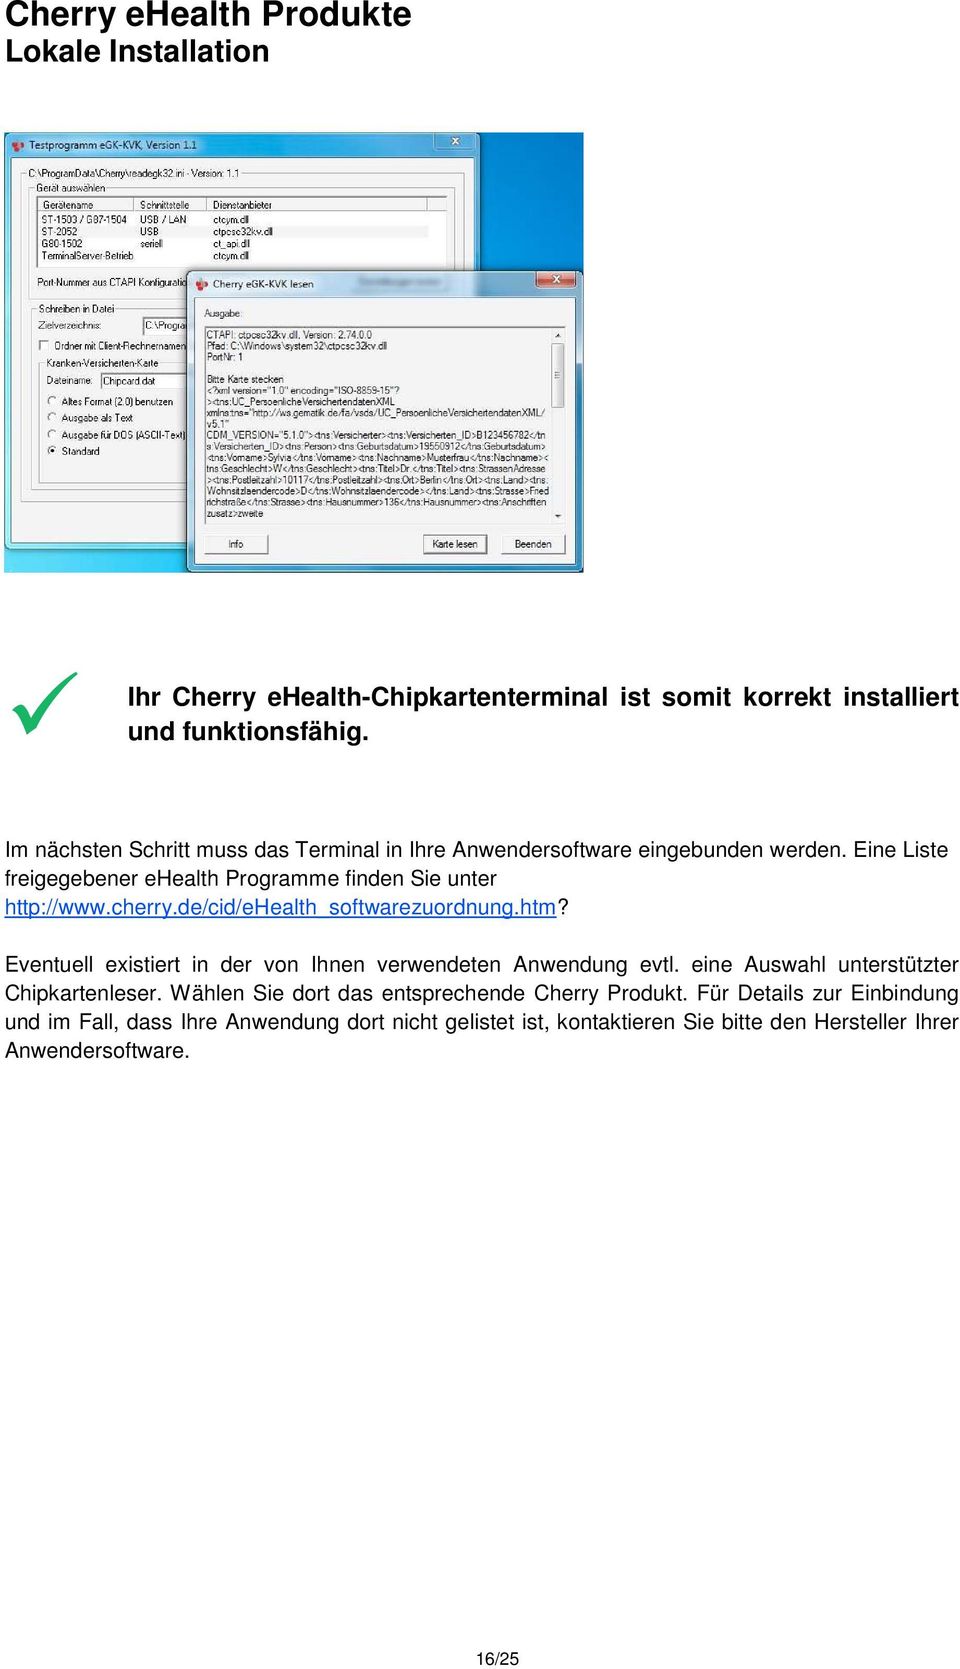 Eine Liste freigegebener ehealth Programme finden Sie unter http://www.cherry.de/cid/ehealth_softwarezuordnung.htm?